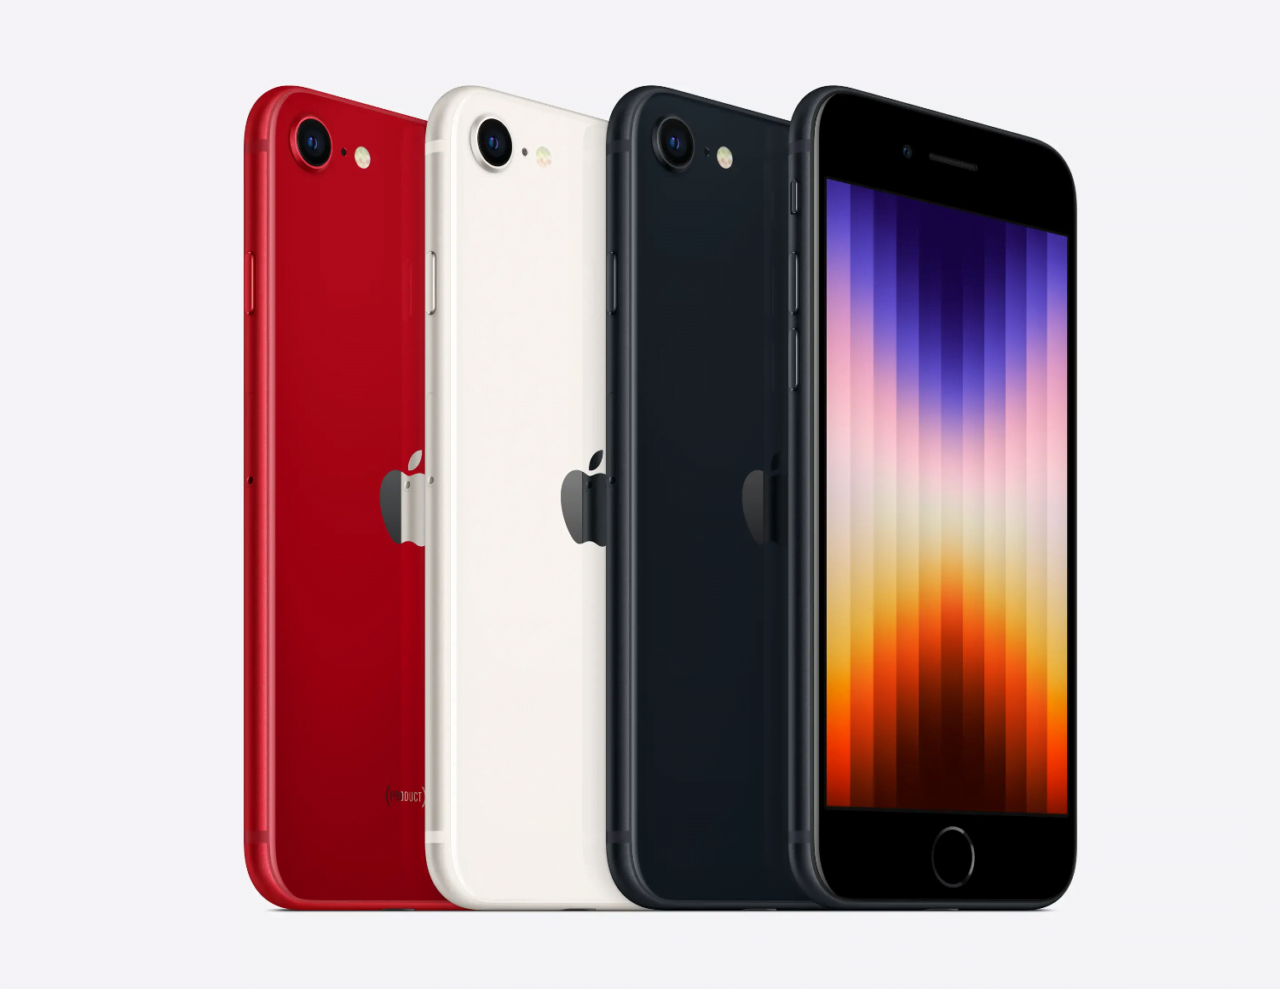 Trzy iPhone'y SE w kolorach czerwonym, białym i czarnym, obok siebie na białym tle.